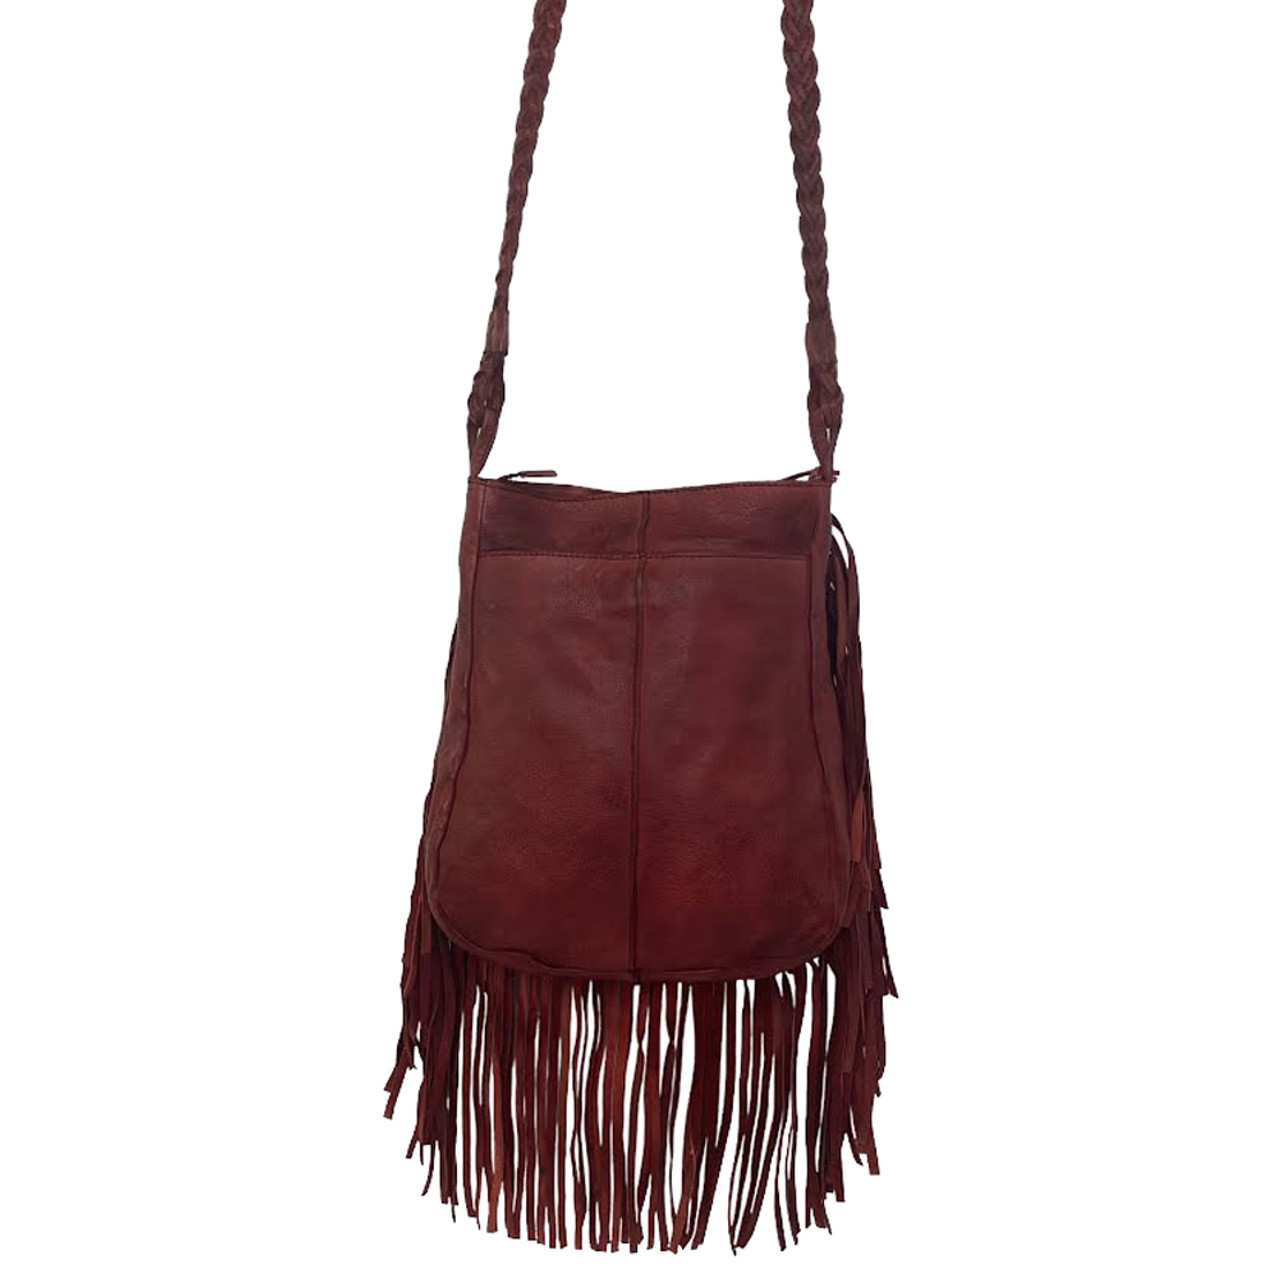 Red Leather Fringed Handbag , Fringed Leather Purse, Boho Style Bag - Etsy